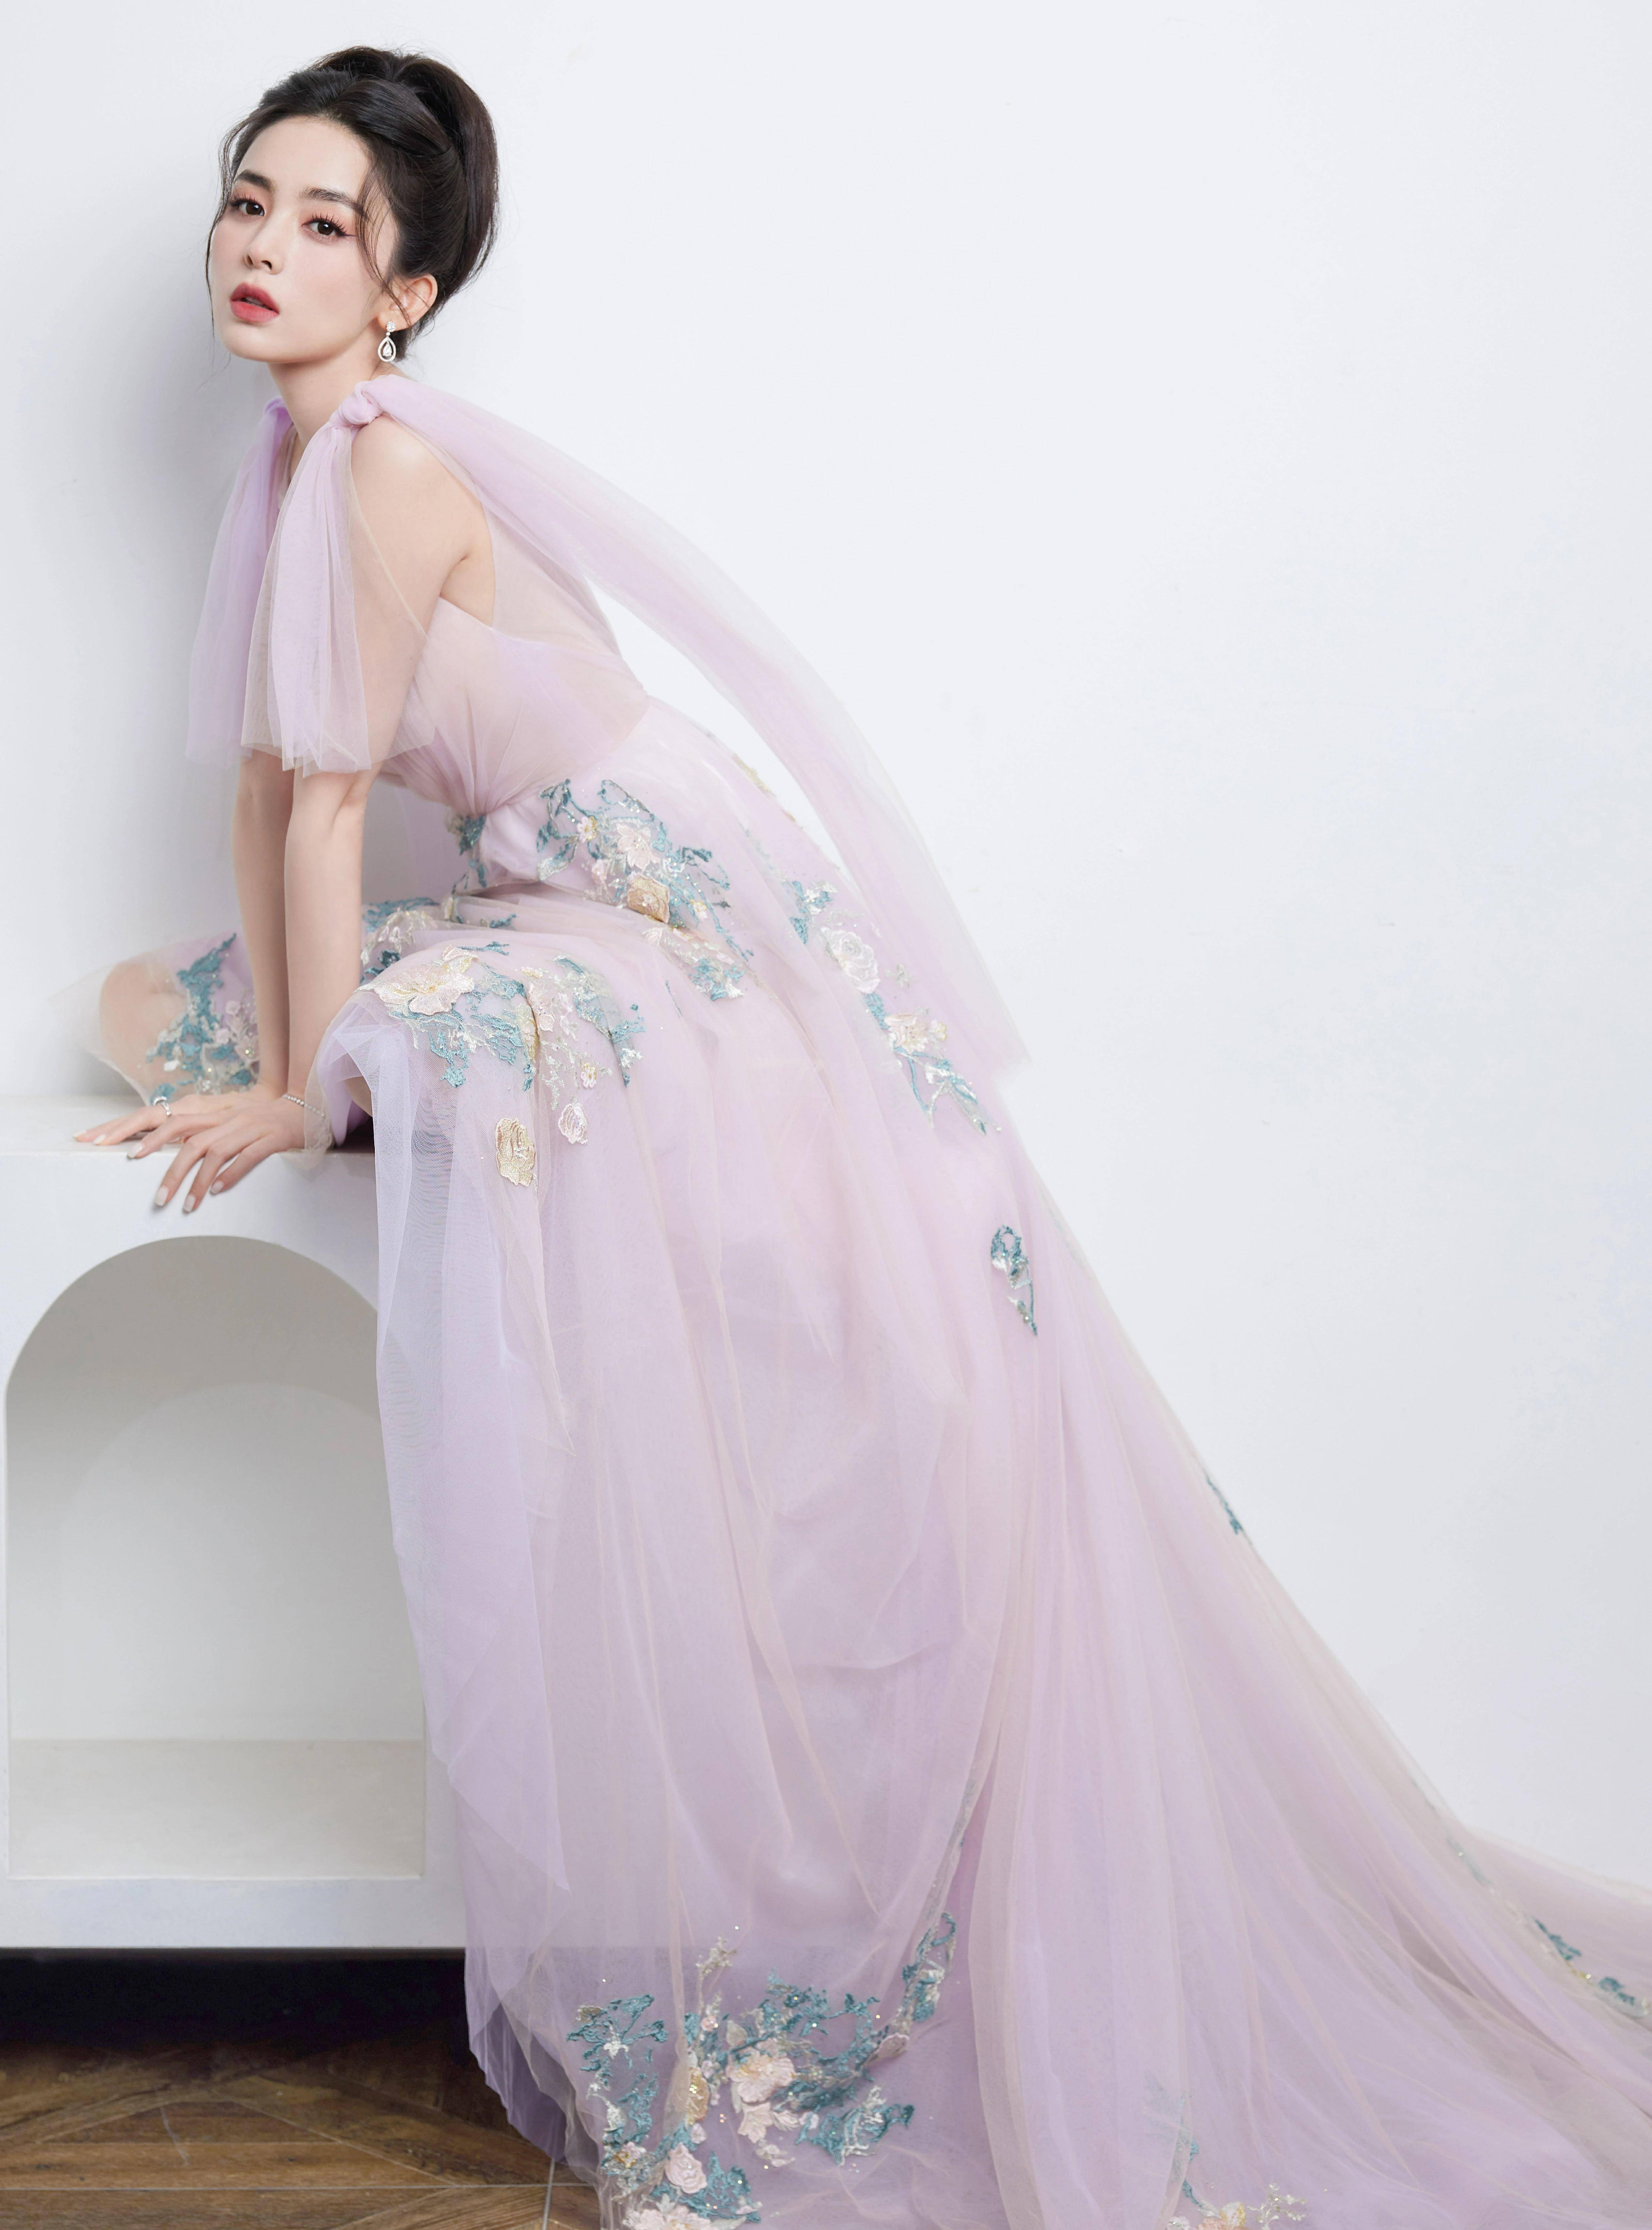 古力娜扎紫色时尚连身礼裙的薰馨梦境,美目流转,裙摆轻飘